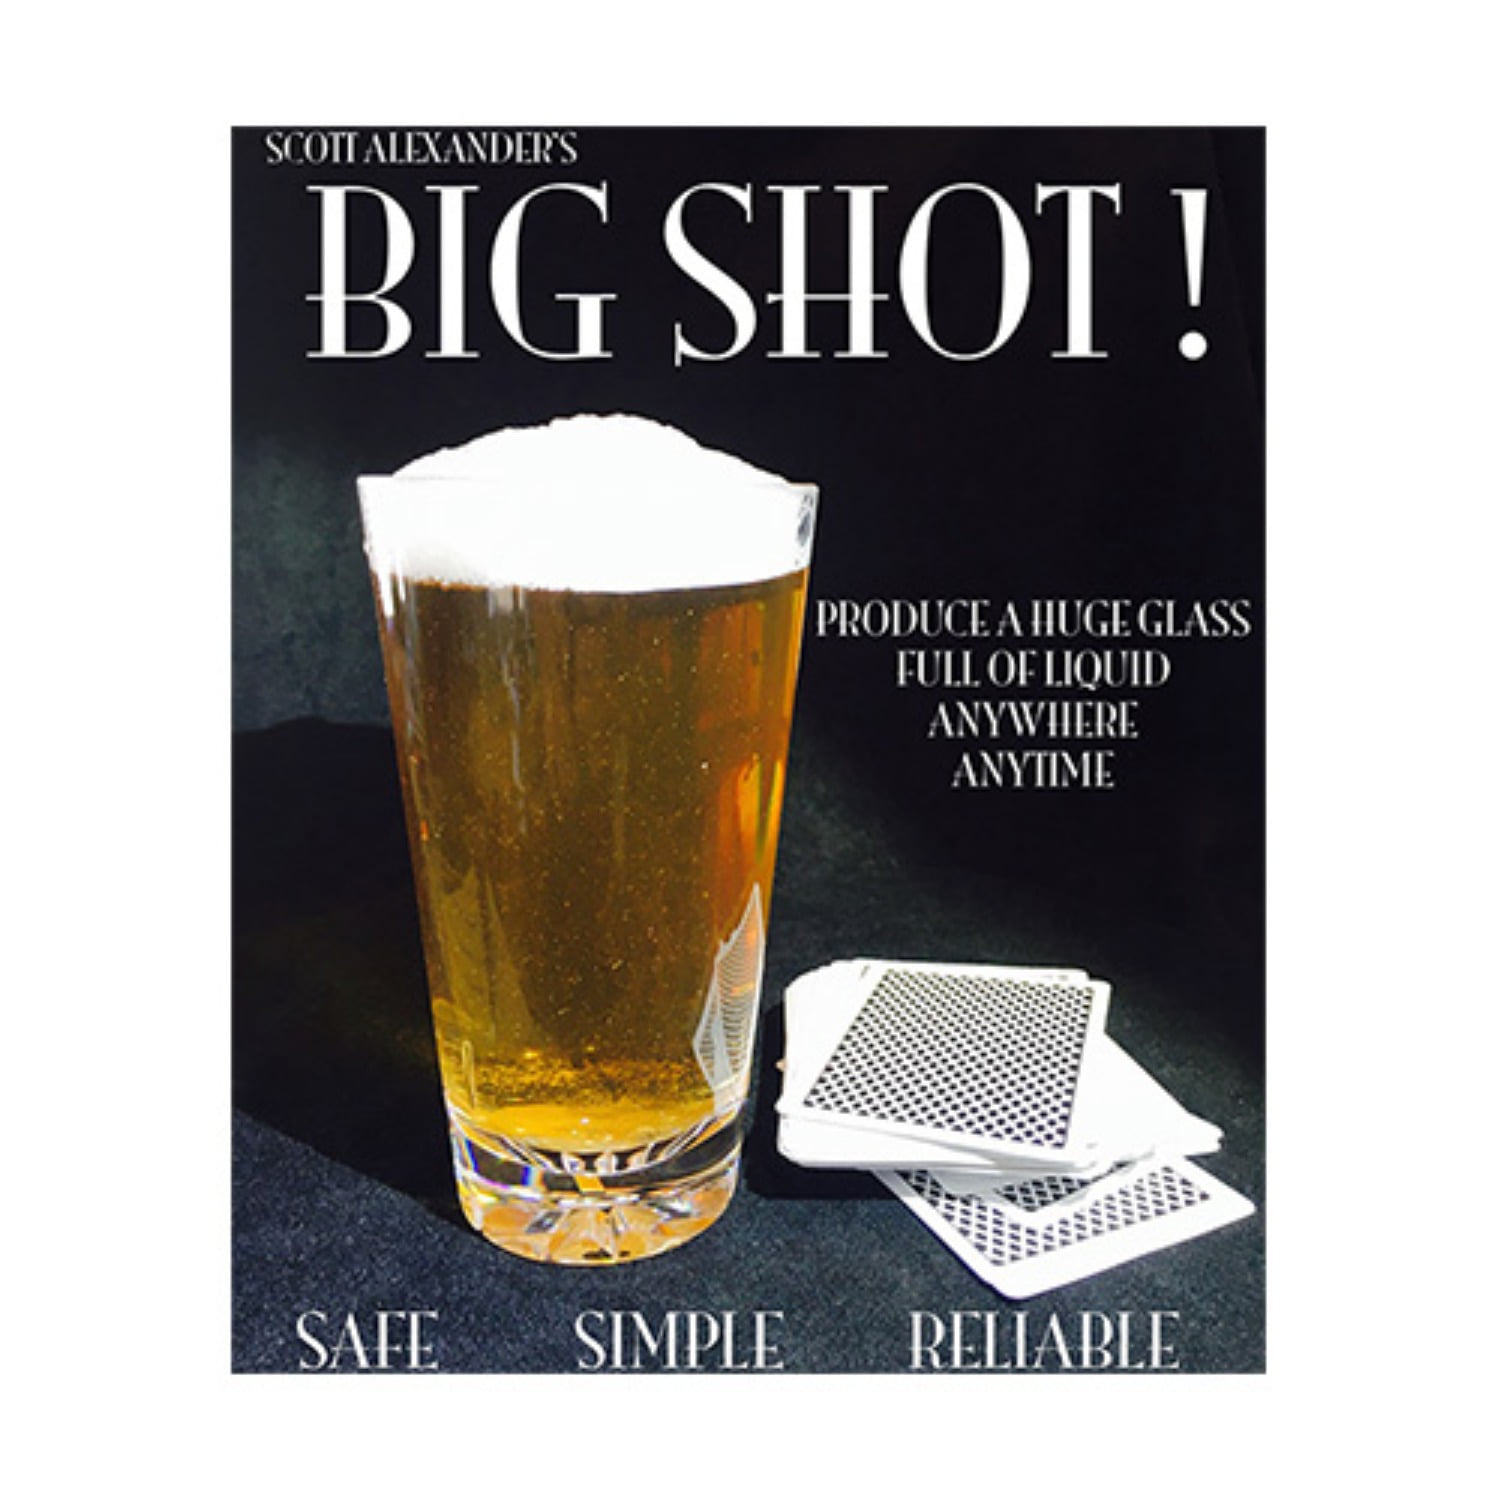 [빅샷] Big Shot by Scott Alexander - 도저희 나올 수 없는곳(모자,쇼핑백)에서 음료한잔이 나타납니다.